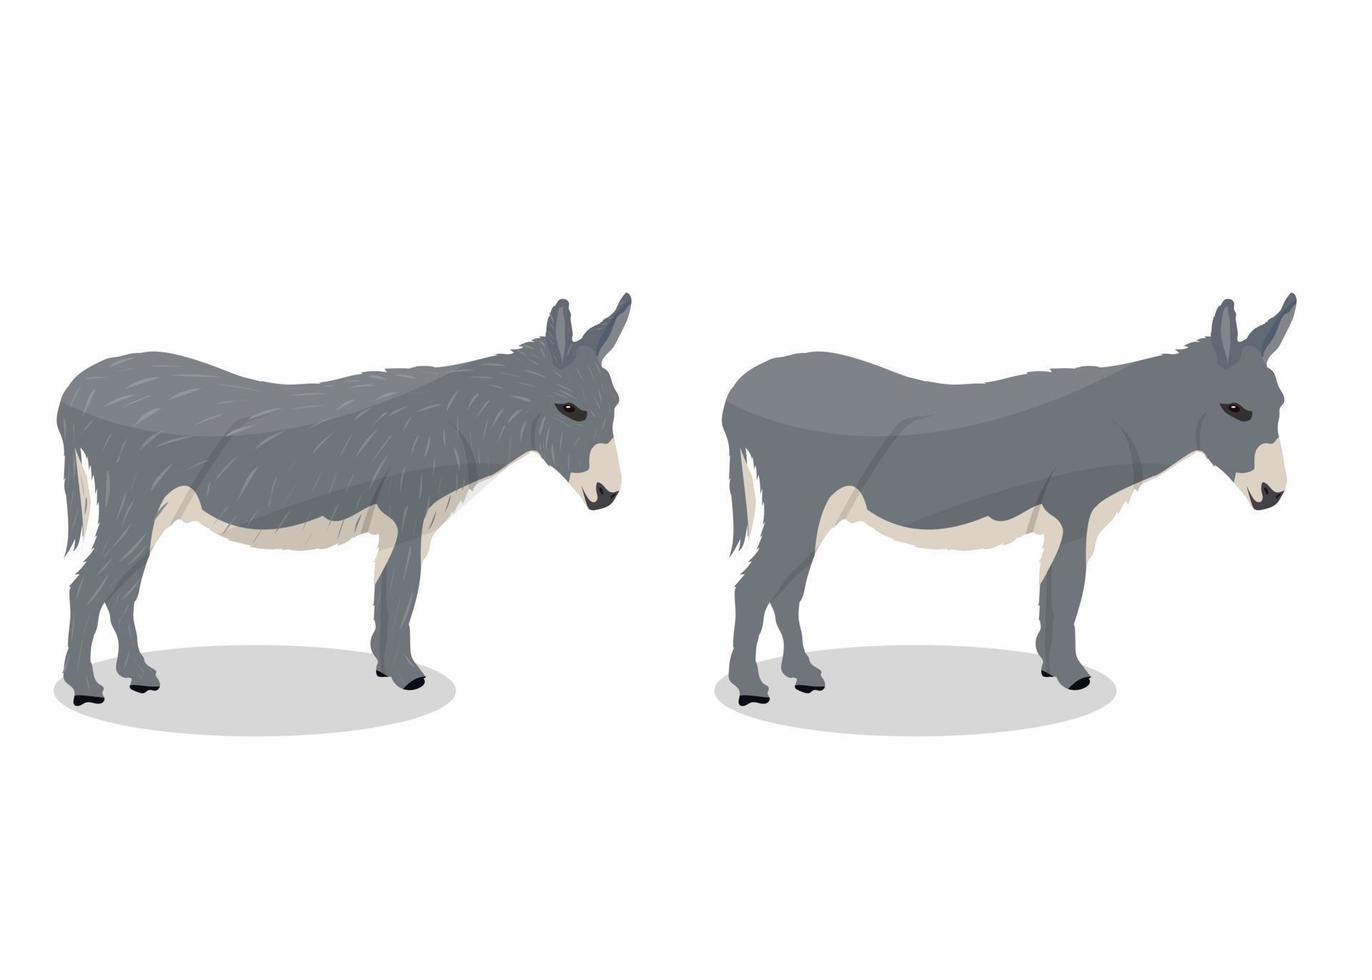 ilustração em vetor burro dos desenhos animados sobre fundo branco, animal selvagem.